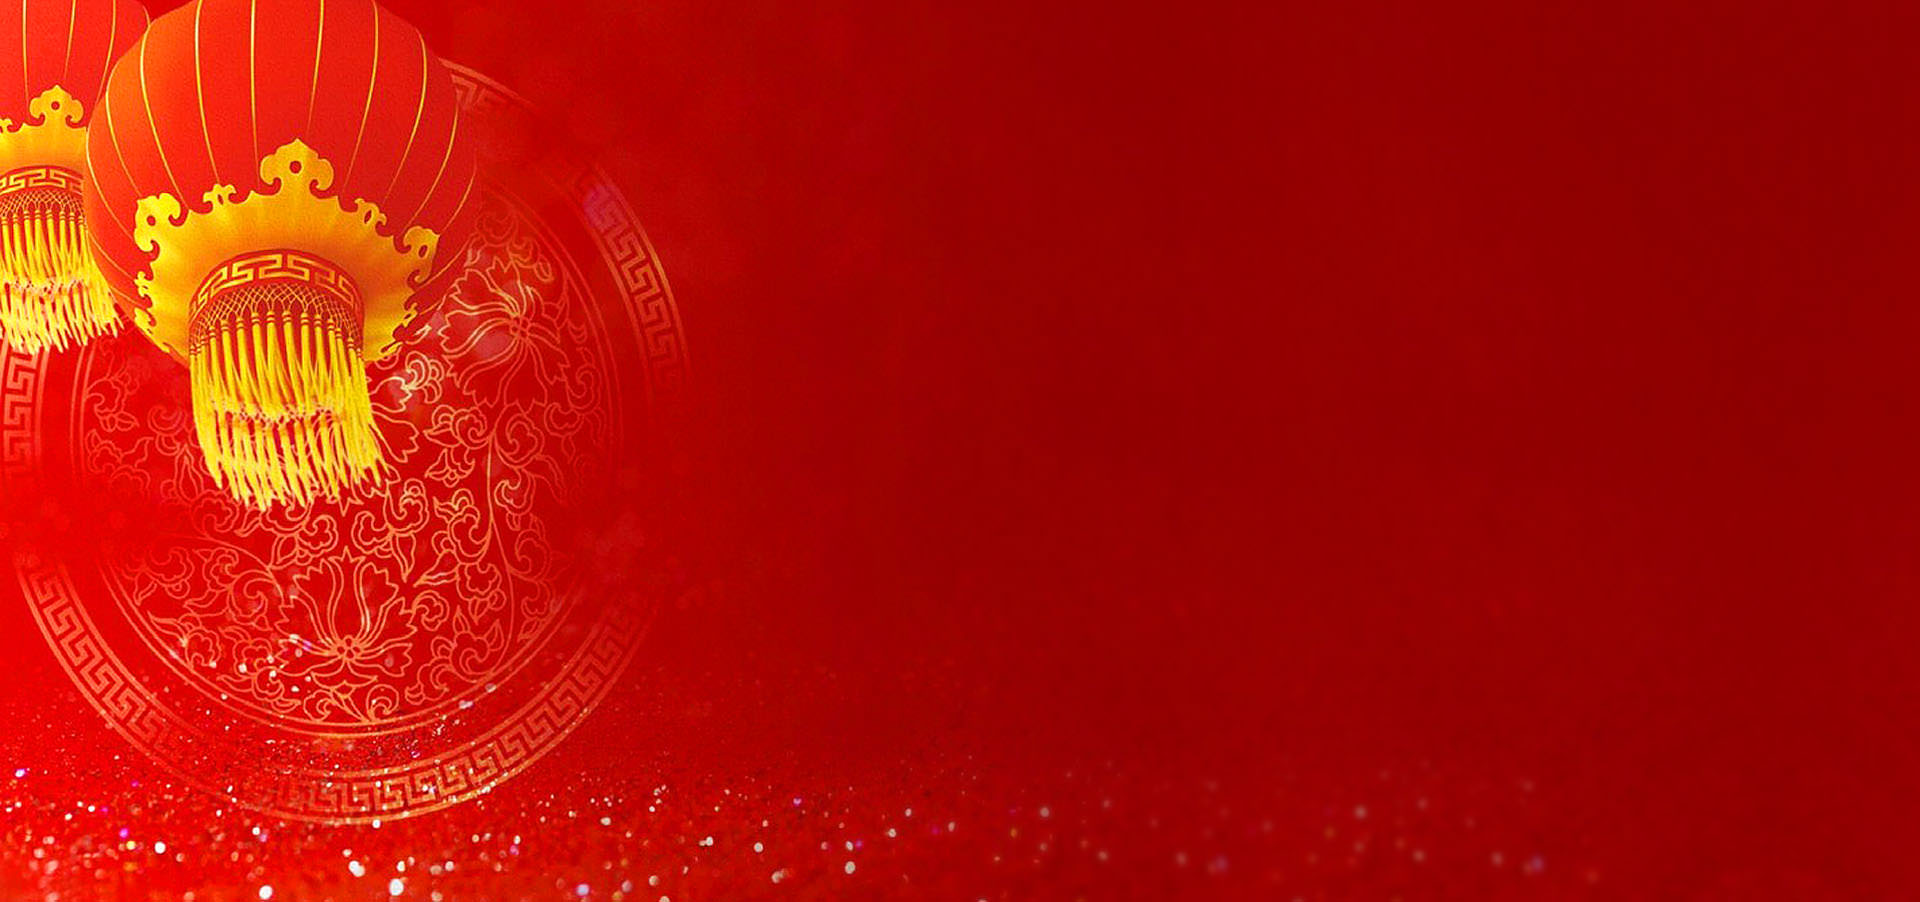 Vector hình nền tết nền đỏ huyền bí